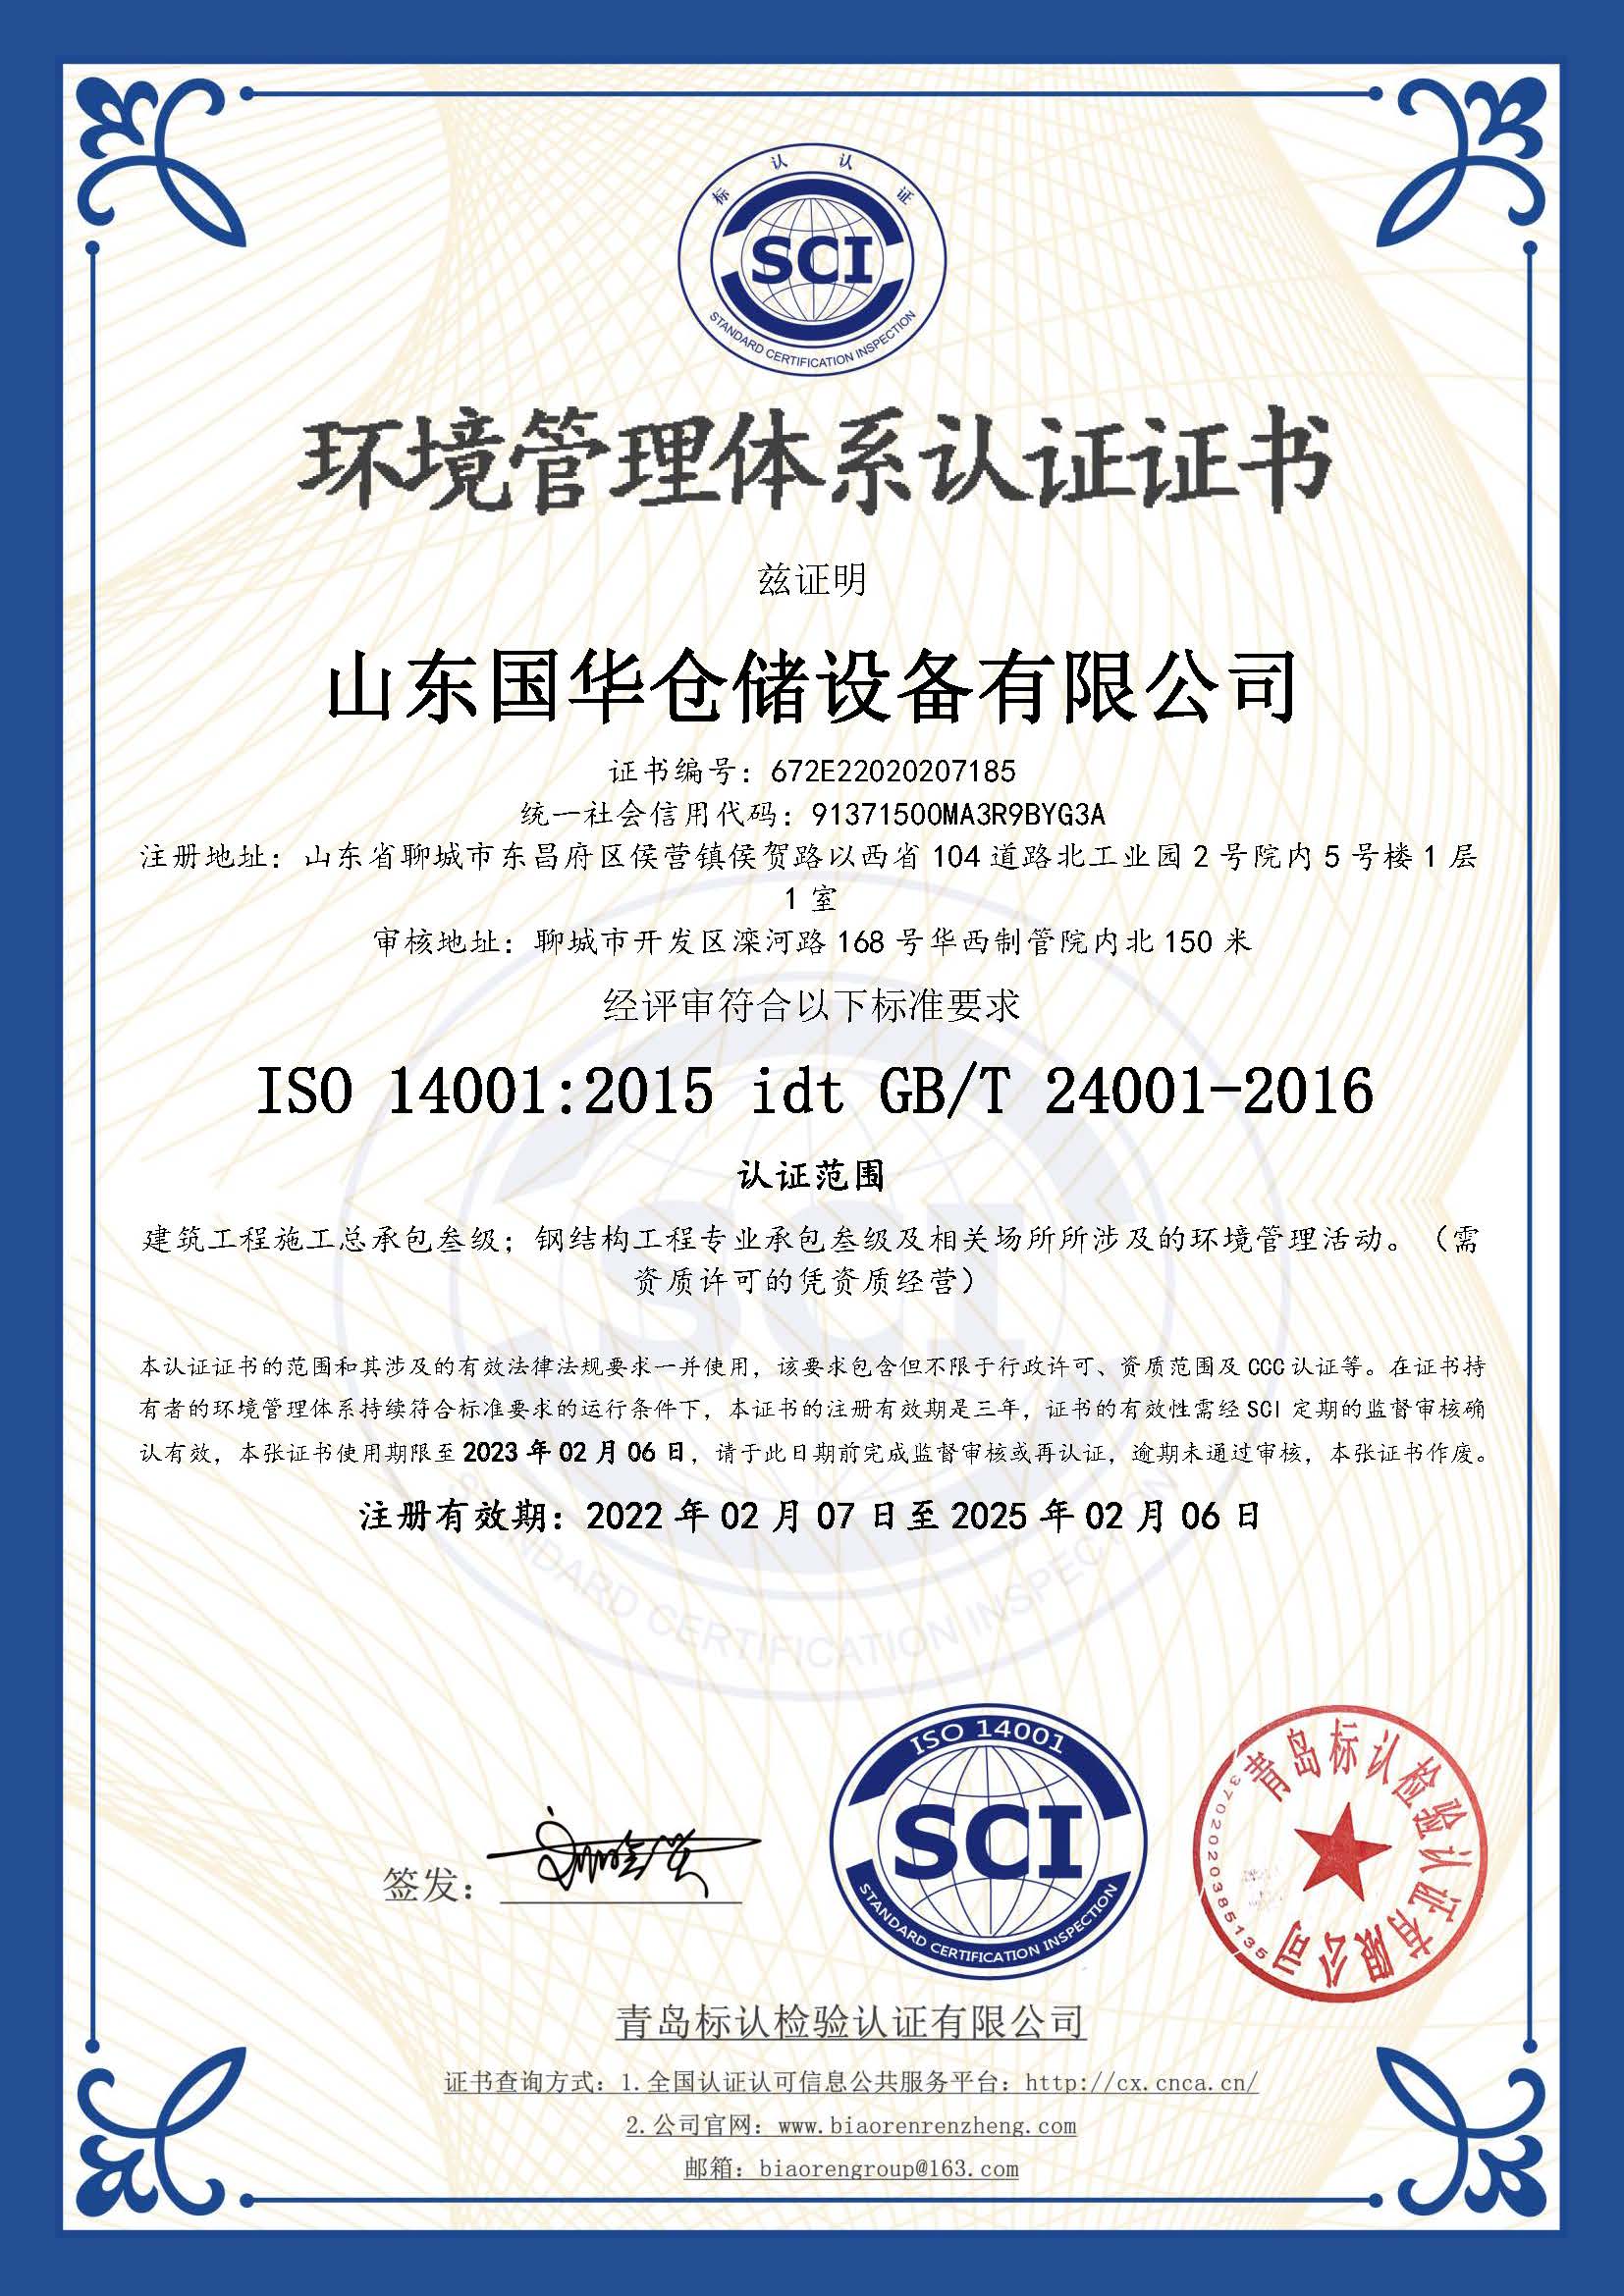 仙桃钢板仓环境管理体系认证证书